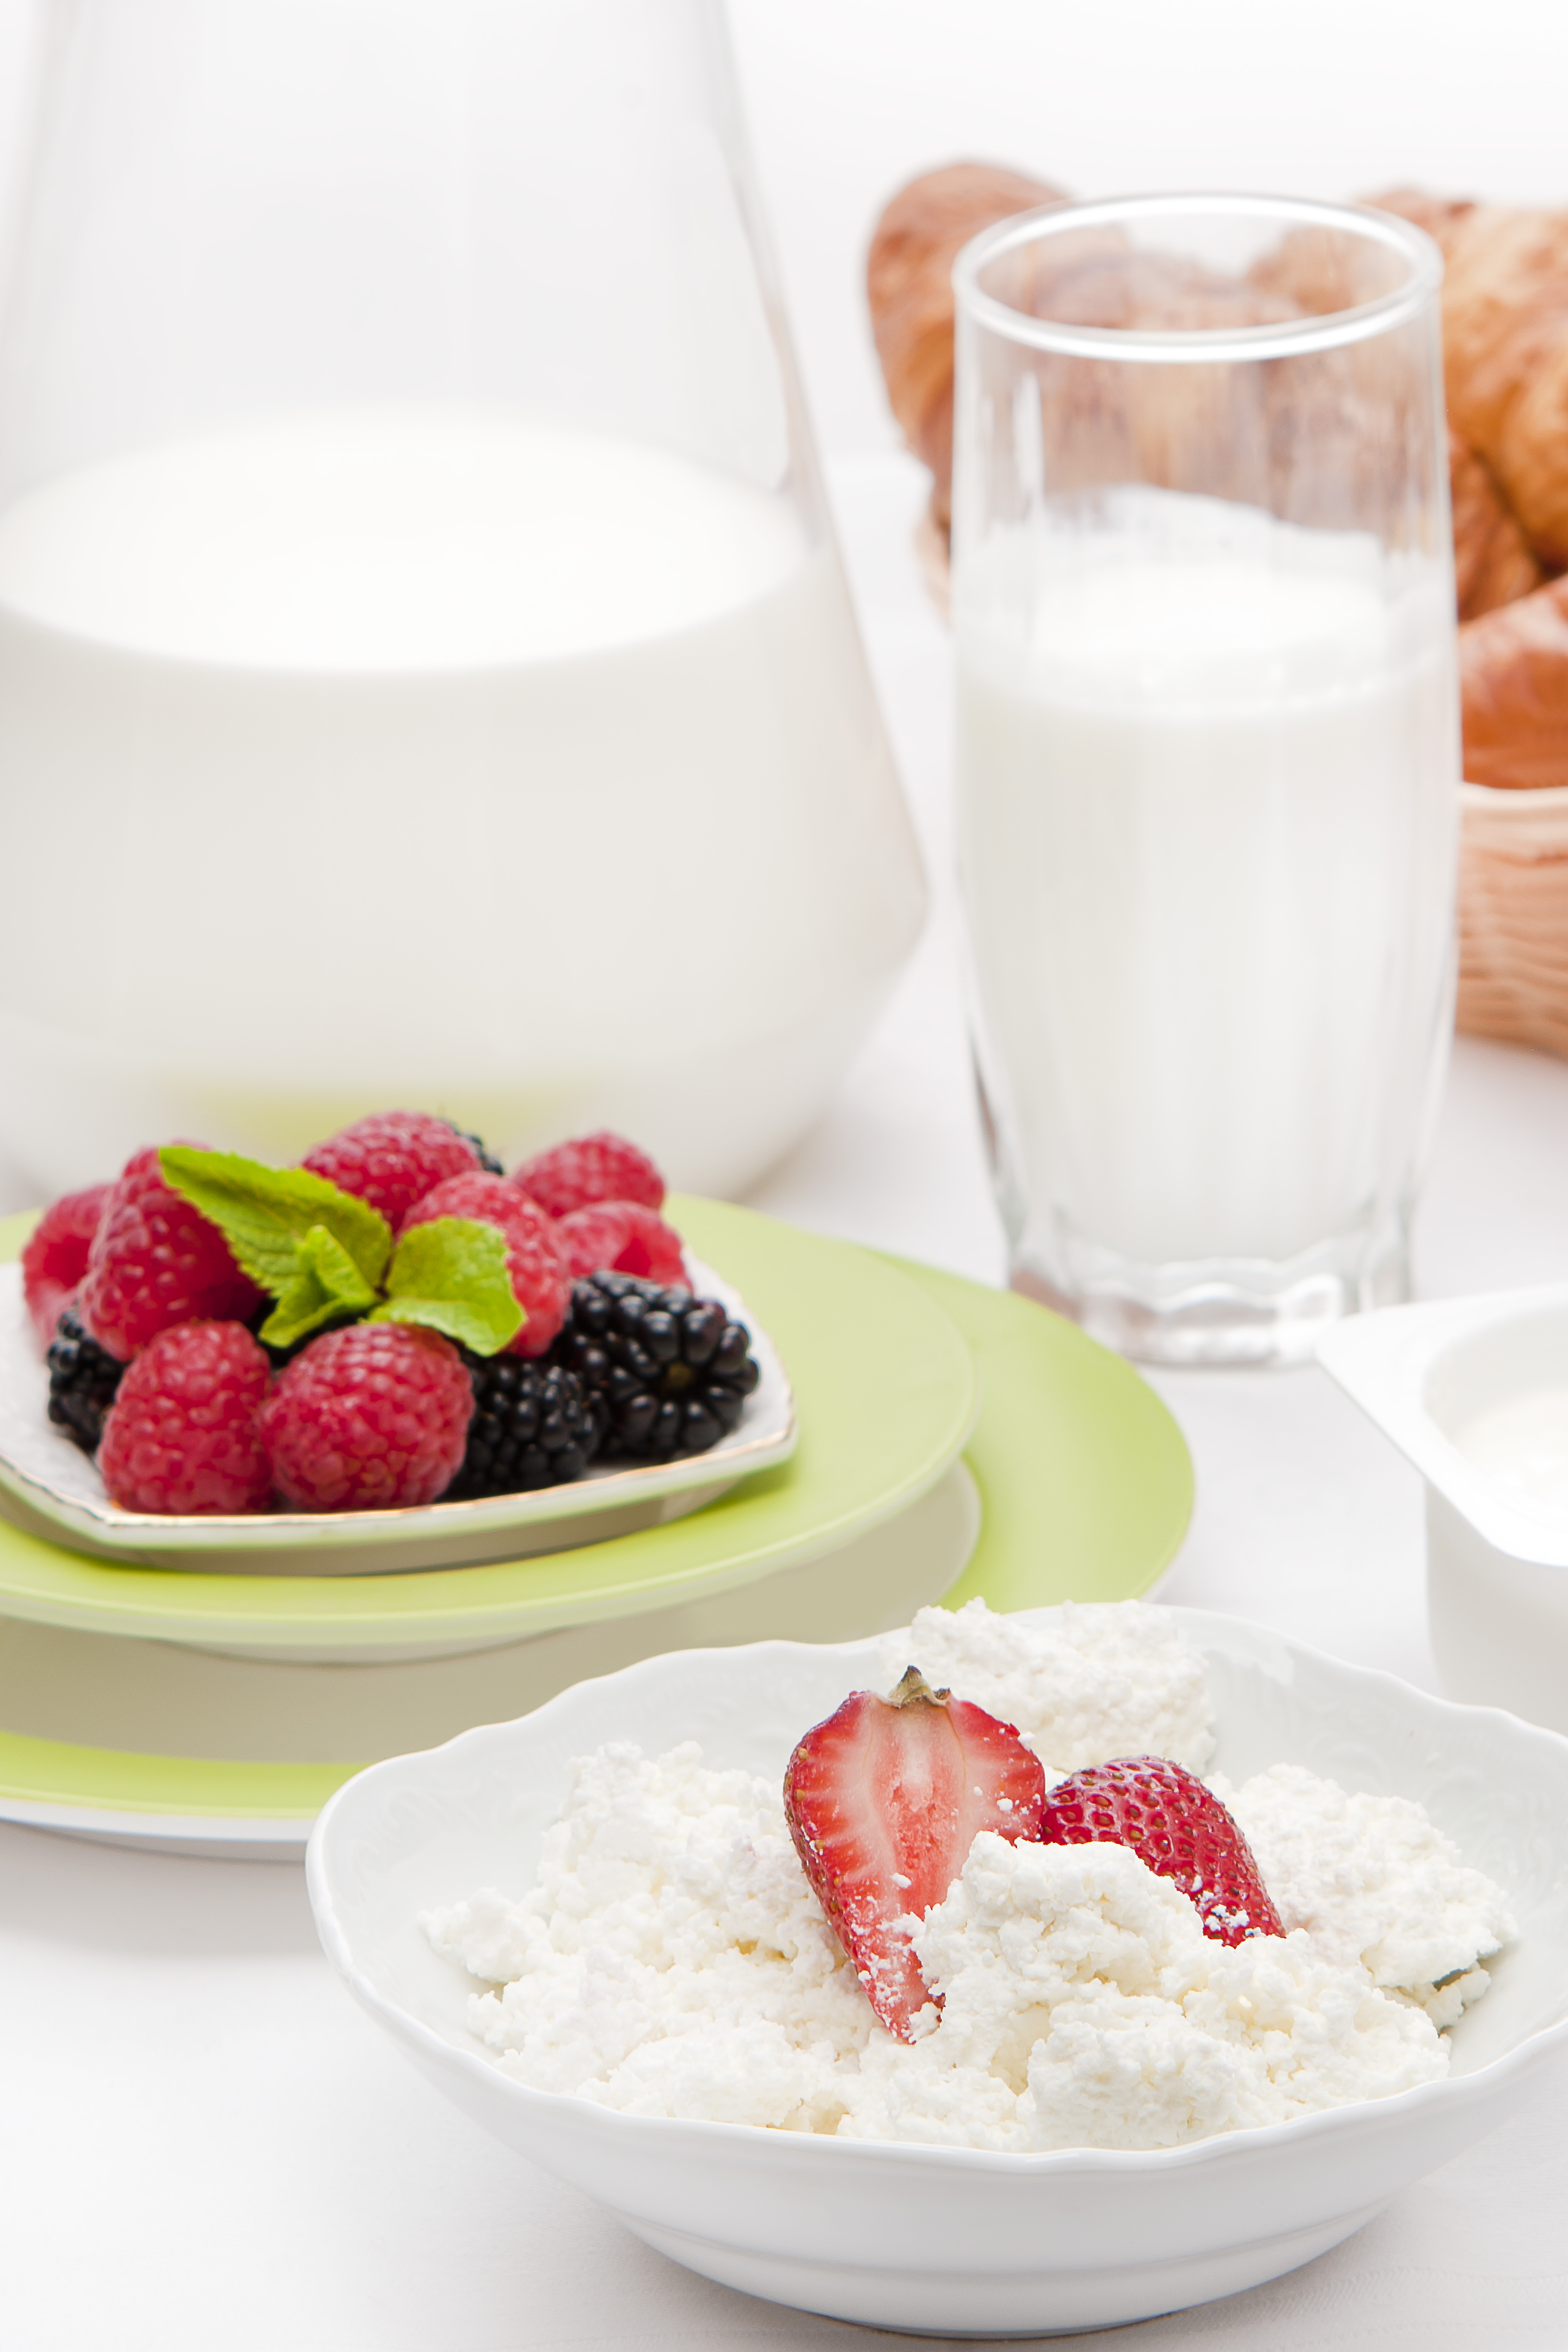 Употребление трех порций молочных продуктов в день может позитивно сказаться на состоянии здоровья